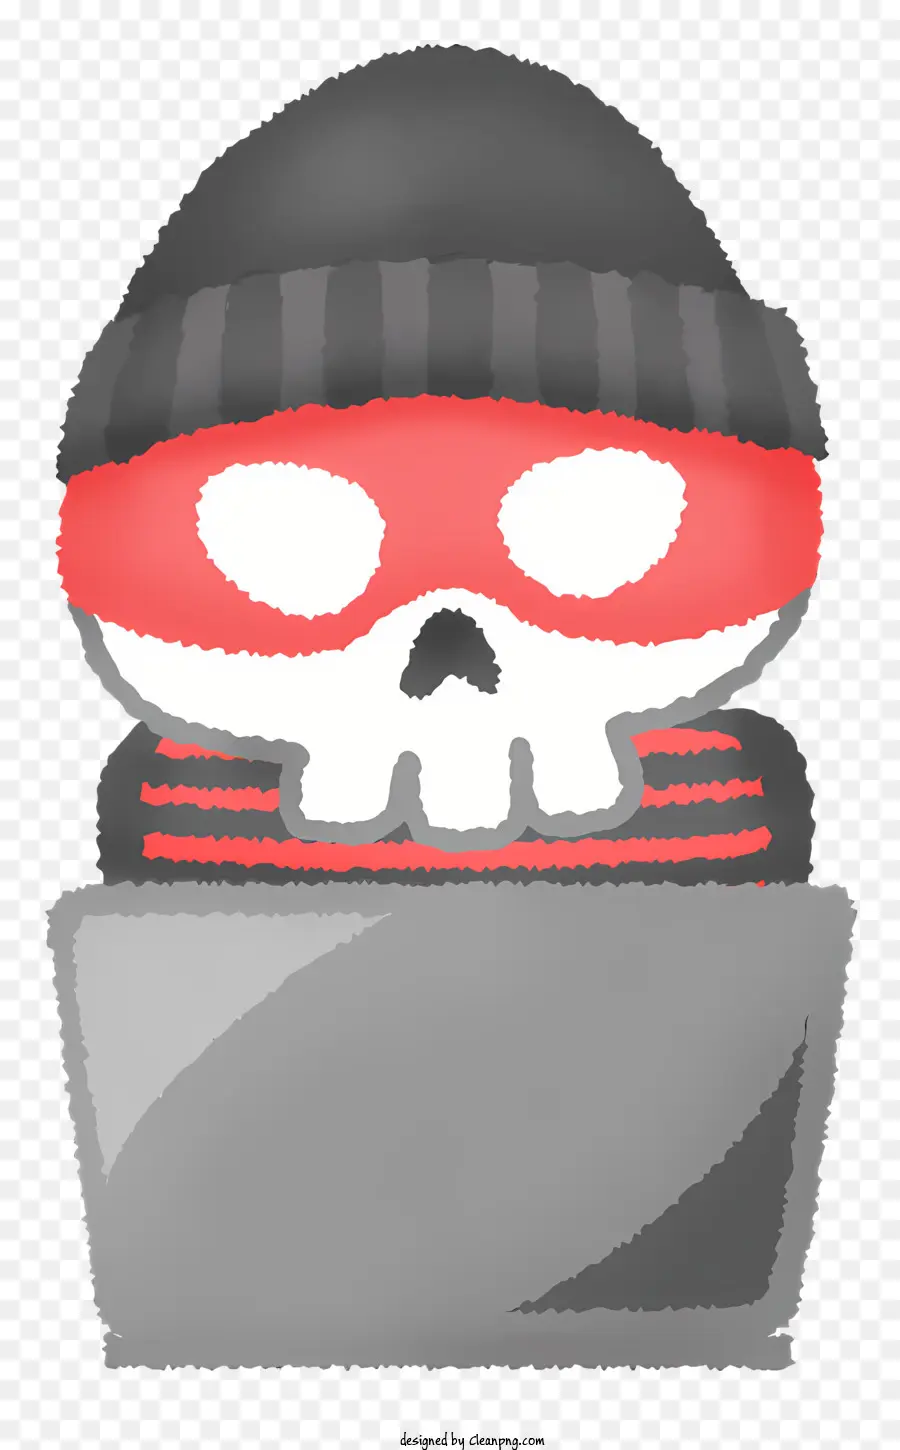 Biểu tượng hoạt hình hộp sọ mũ đỏ và đỏ sọ màu đỏ - Sọ hoạt hình có mũ đỏ và bandana